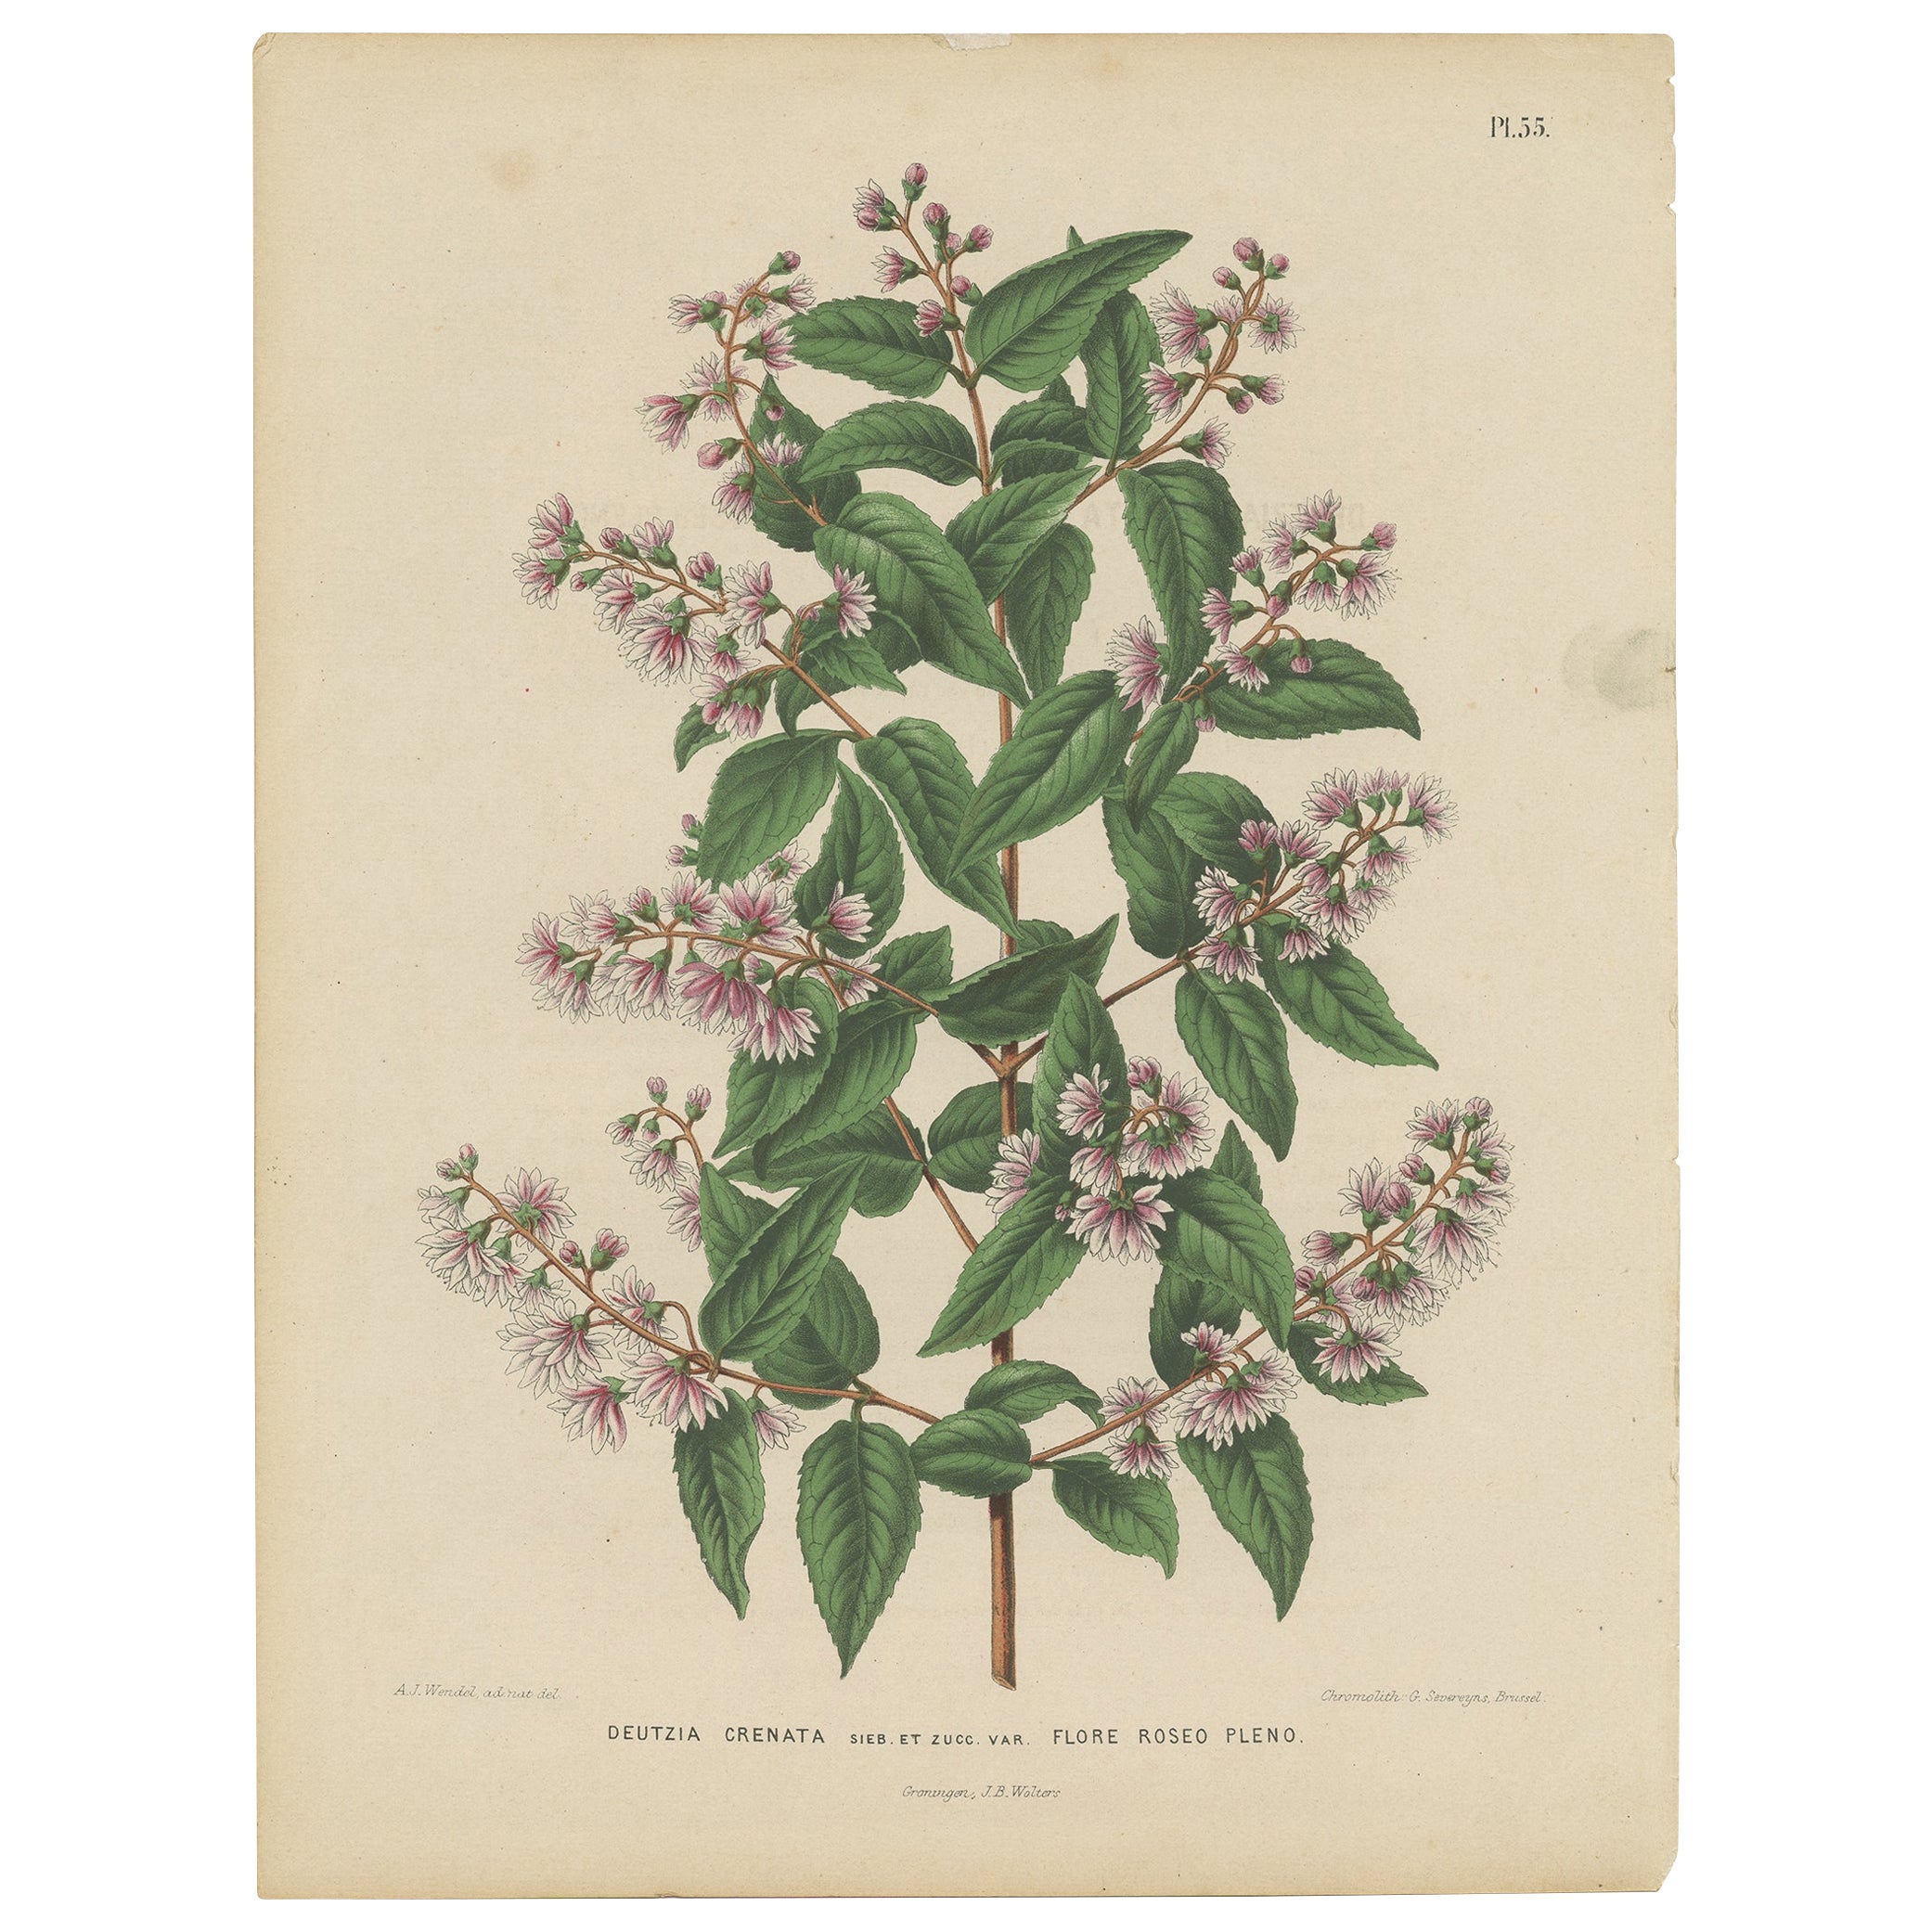 Antique Handcolored Flower Print of the Deutzia Crenata, 1868